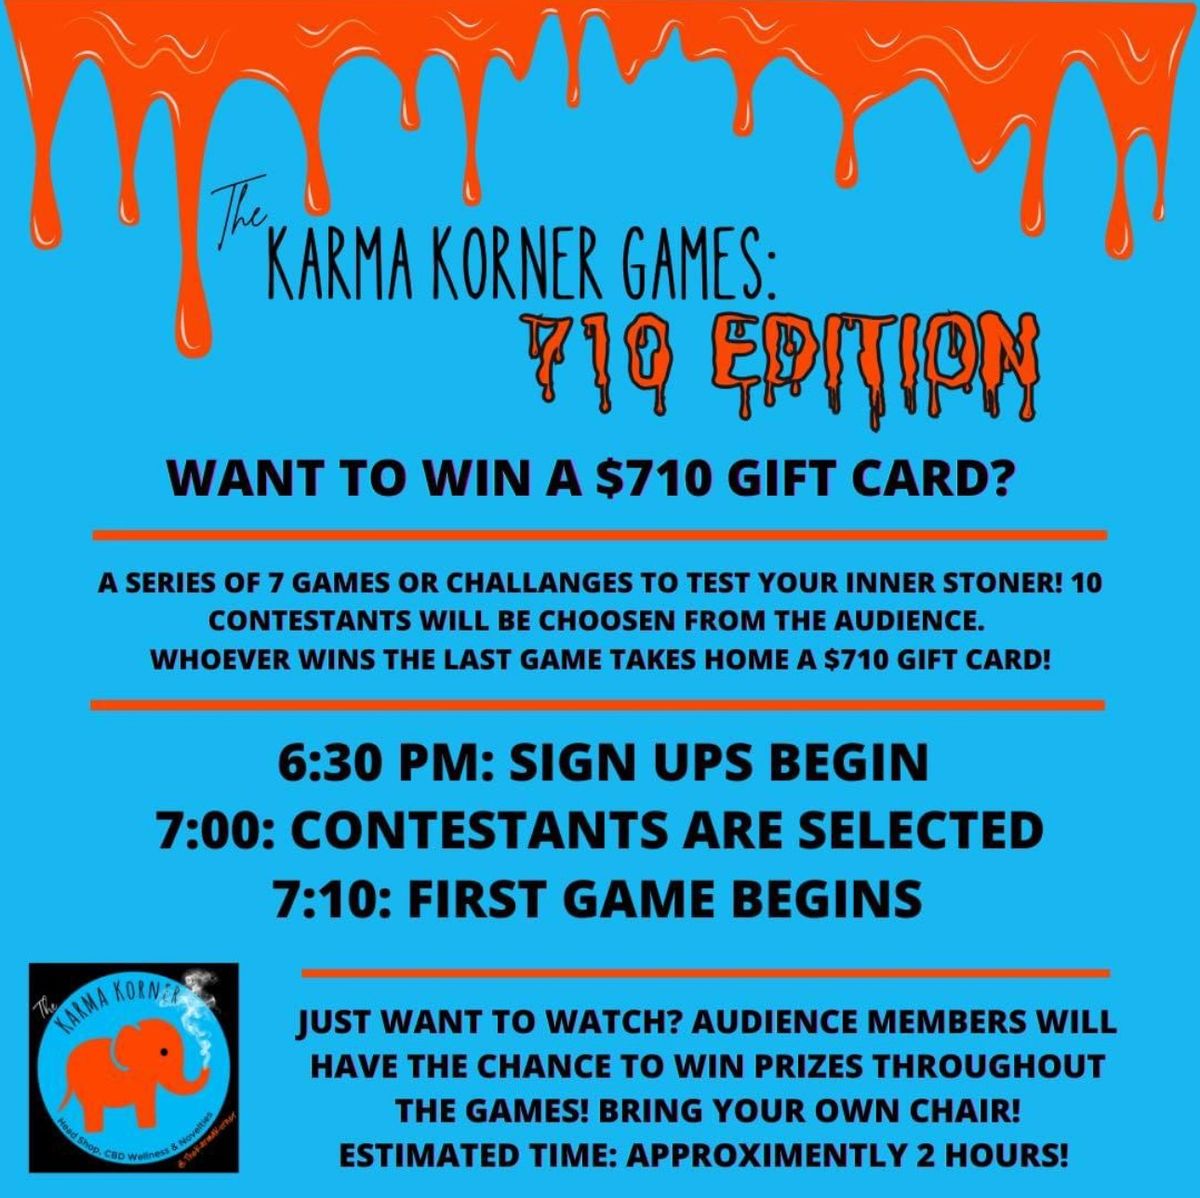 The Karma Korner Games